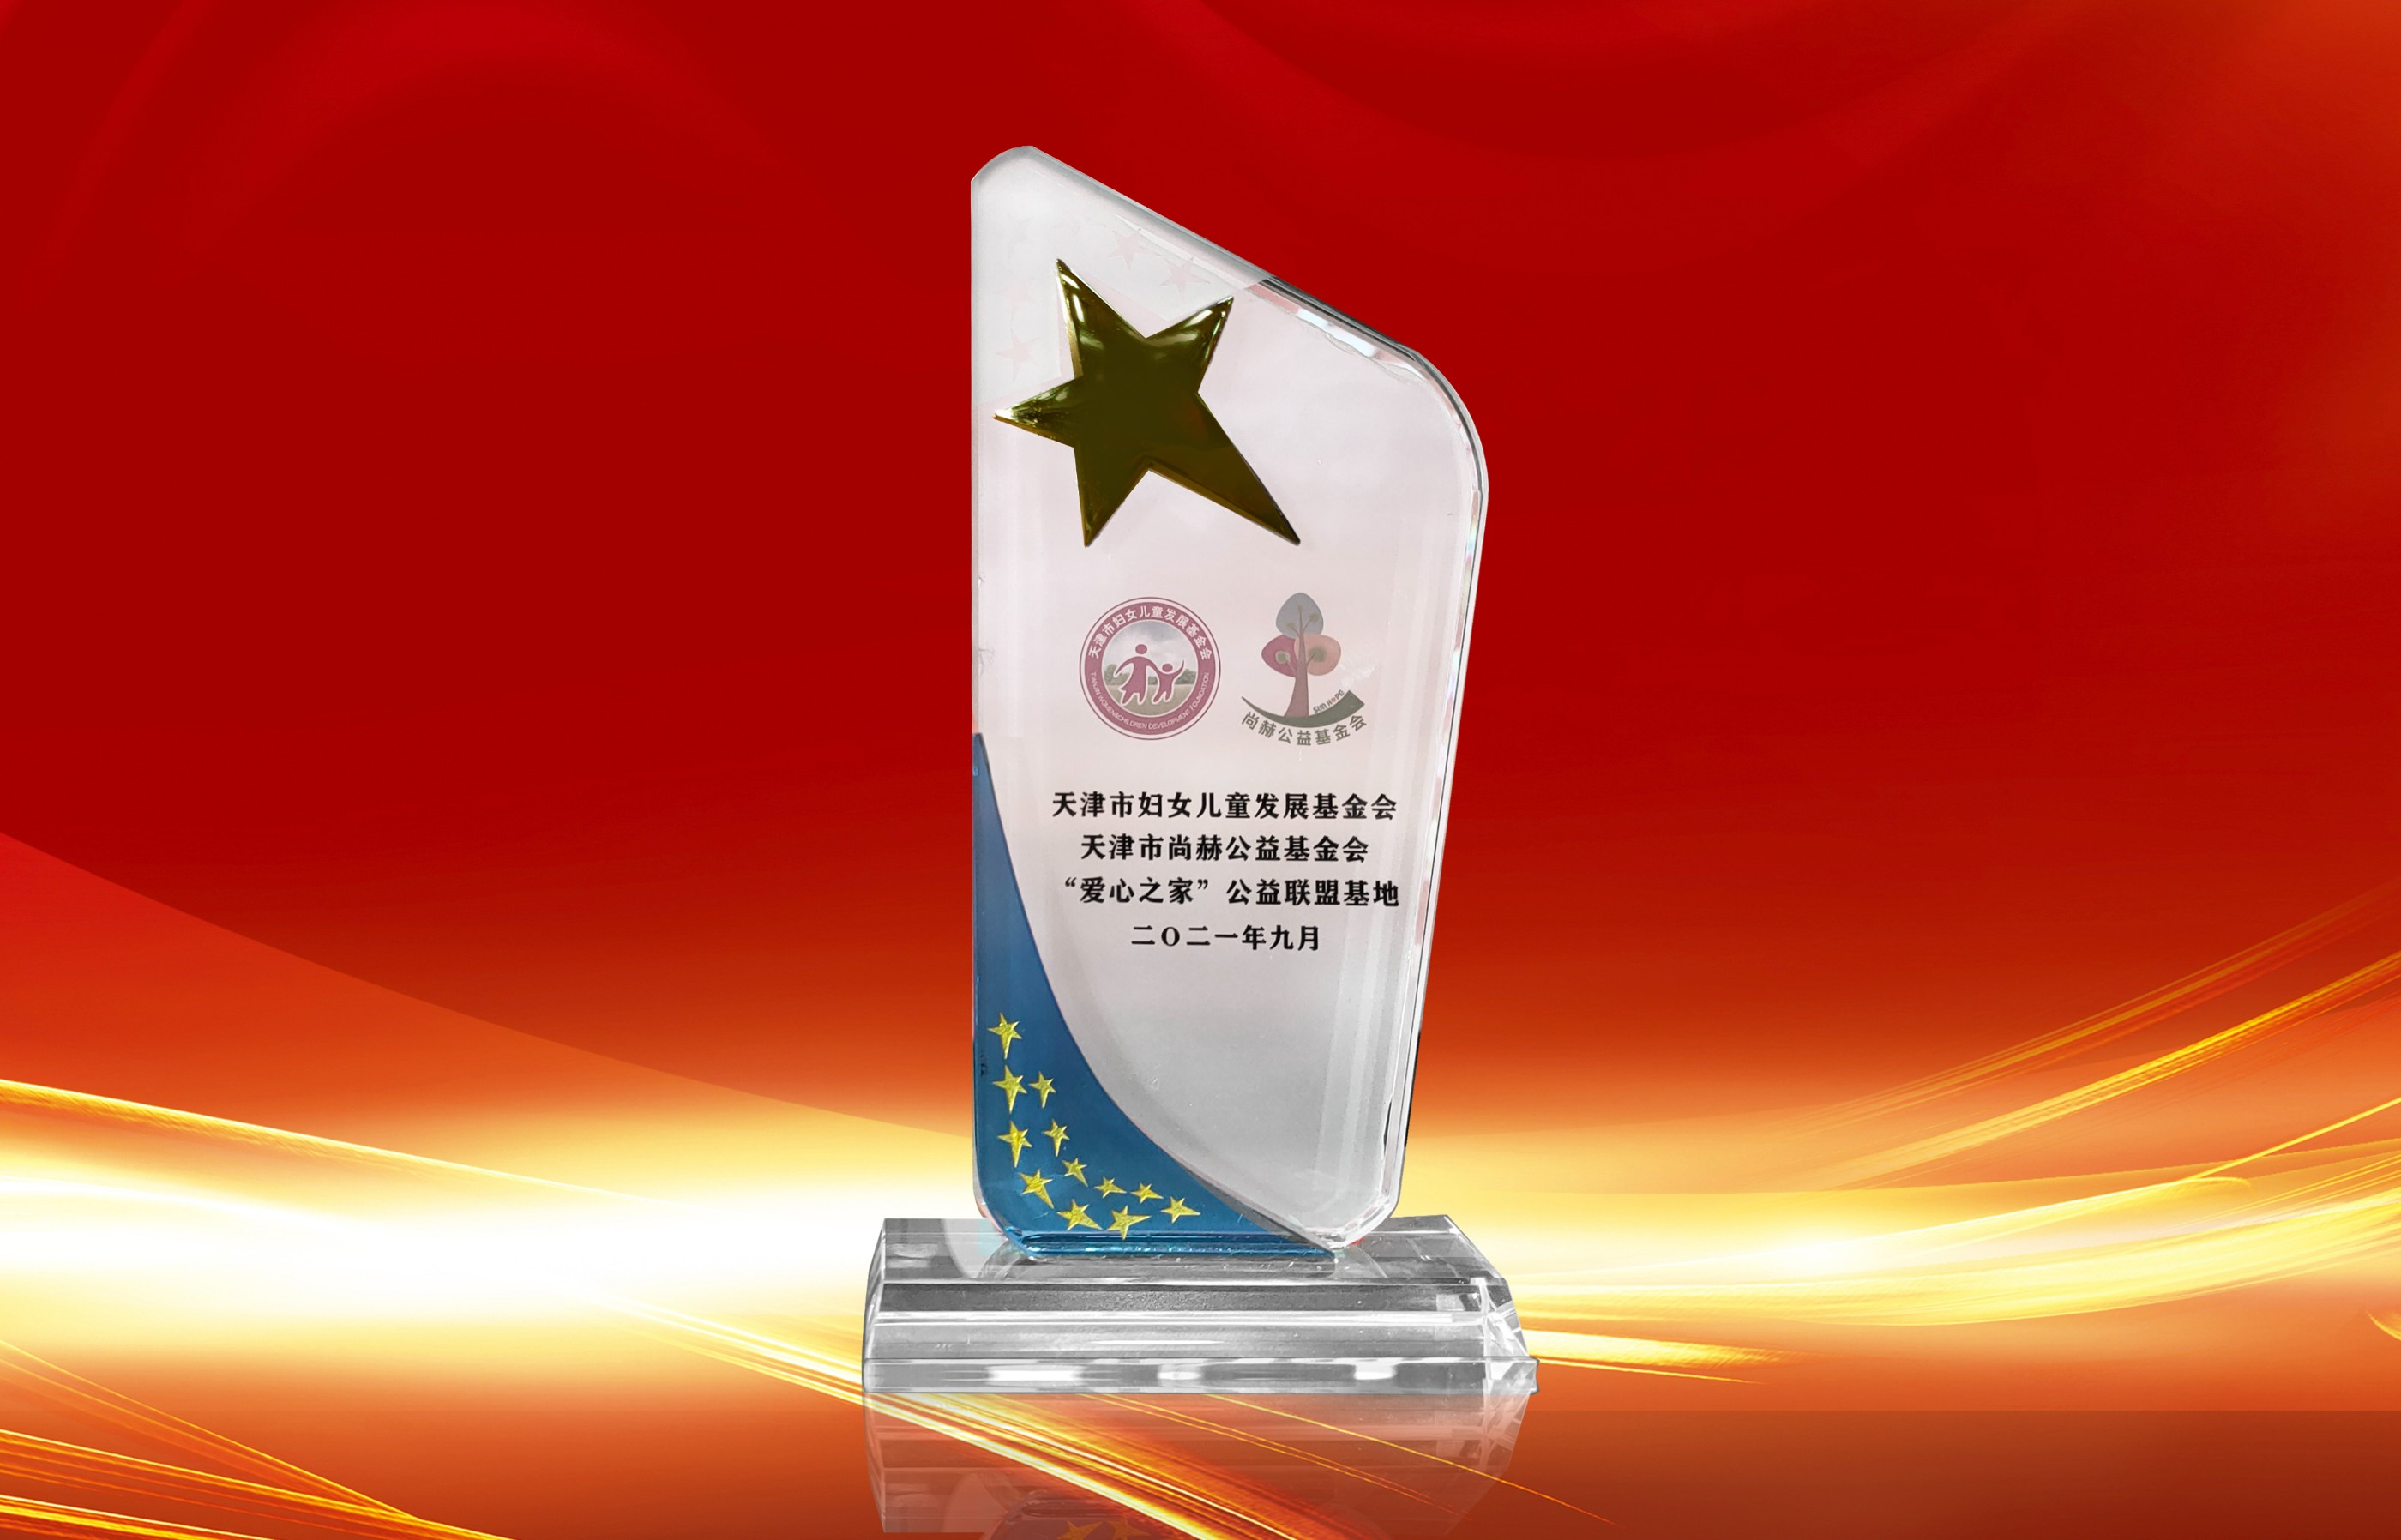 2021年9月-正规的十大网投实体平台(中国)有限公司公司荣获-天津市妇女联合会-“爱心之家”公益联盟基地奖杯